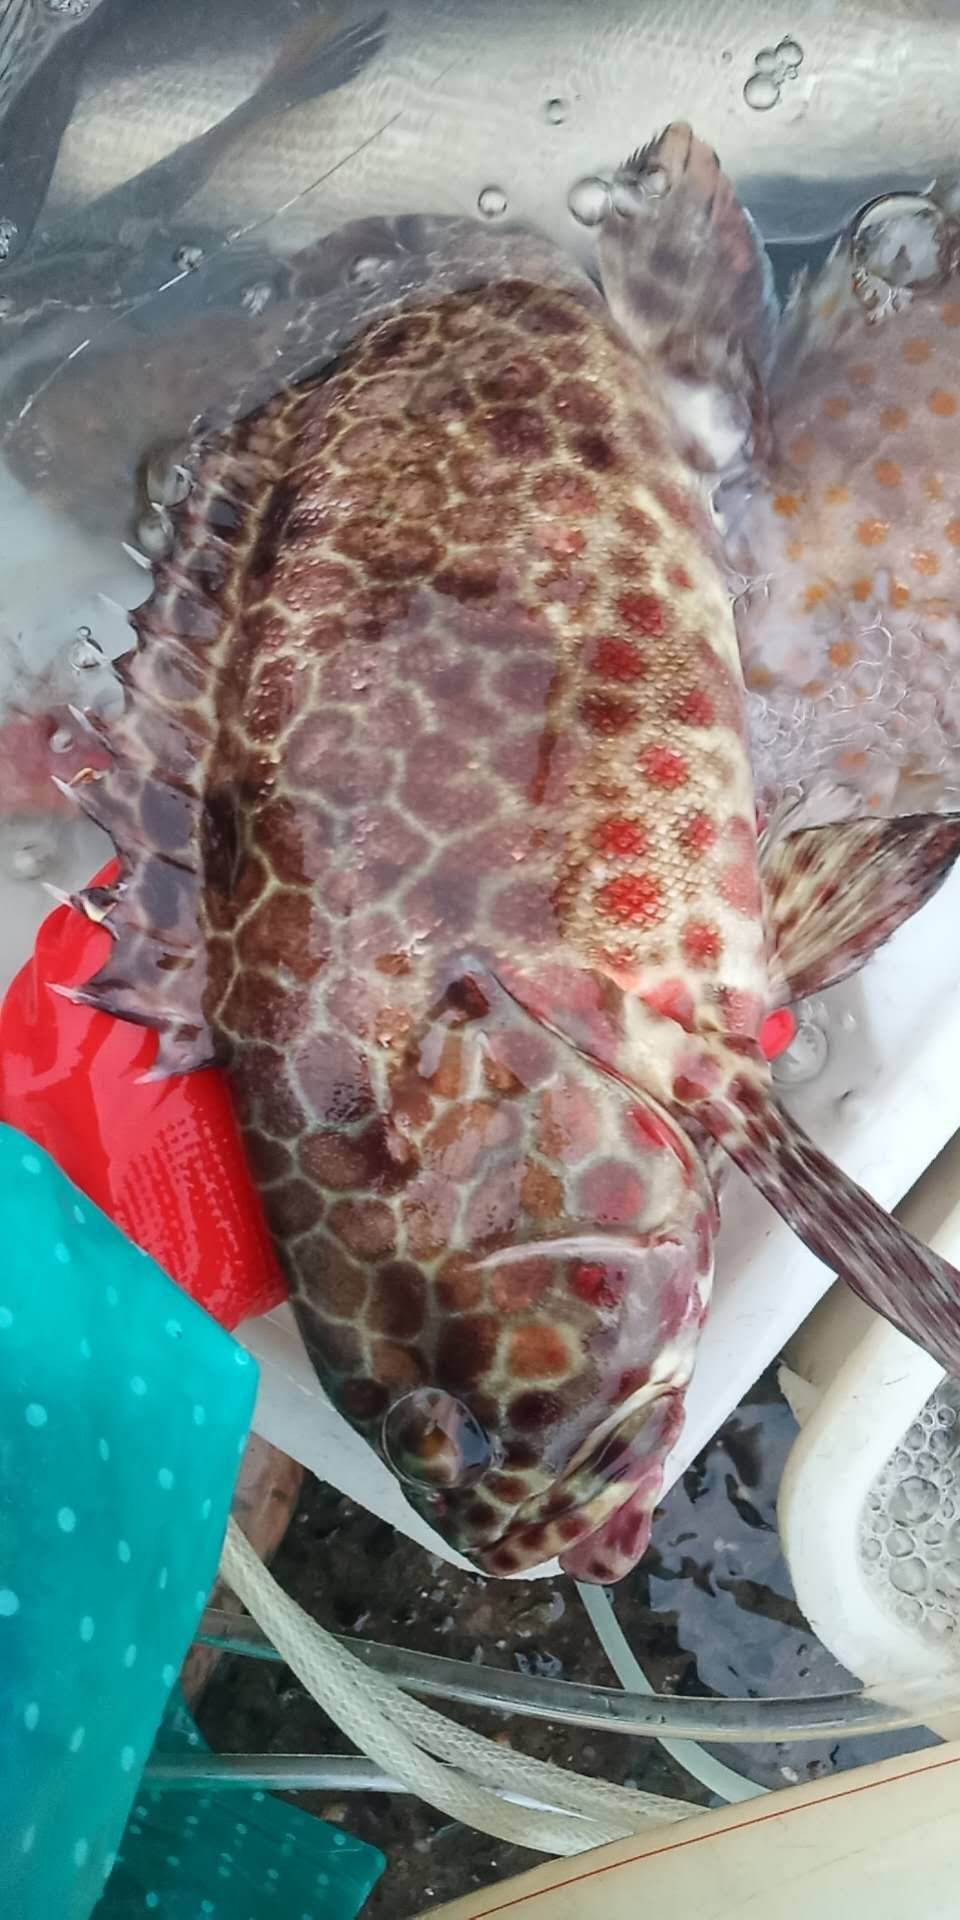 [金钱斑批发] 天然石斑鱼价格160元/斤 - 惠农网